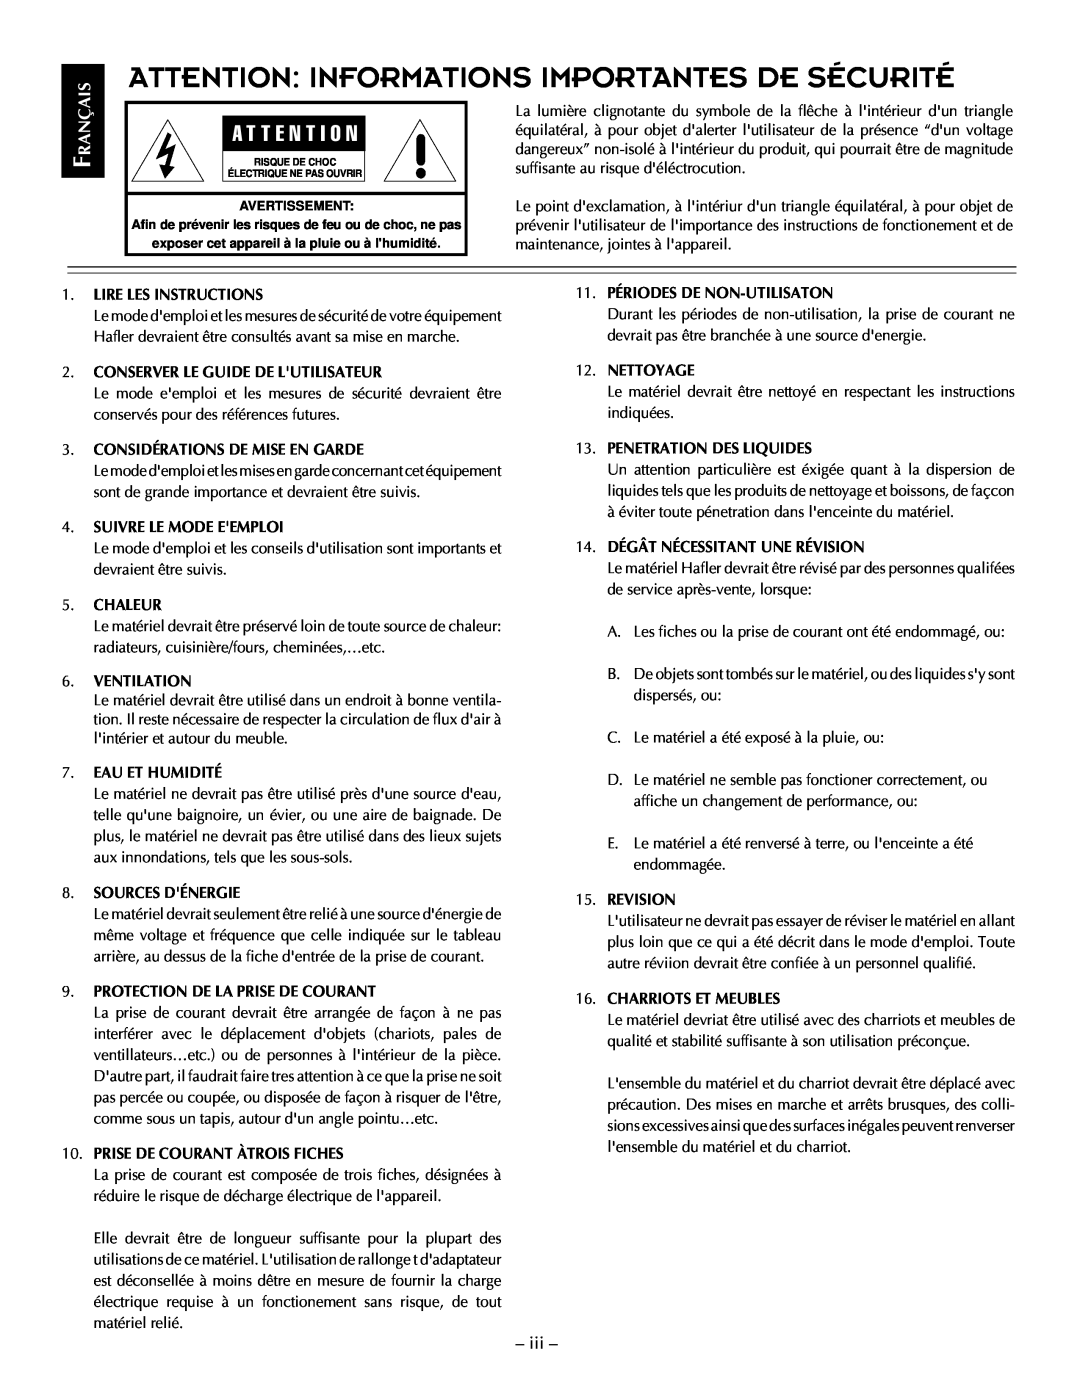 Hafler TRM12S, TRM10S manual Attention Informations Importantes De Sécurité, iii, A T T E N T I O N 